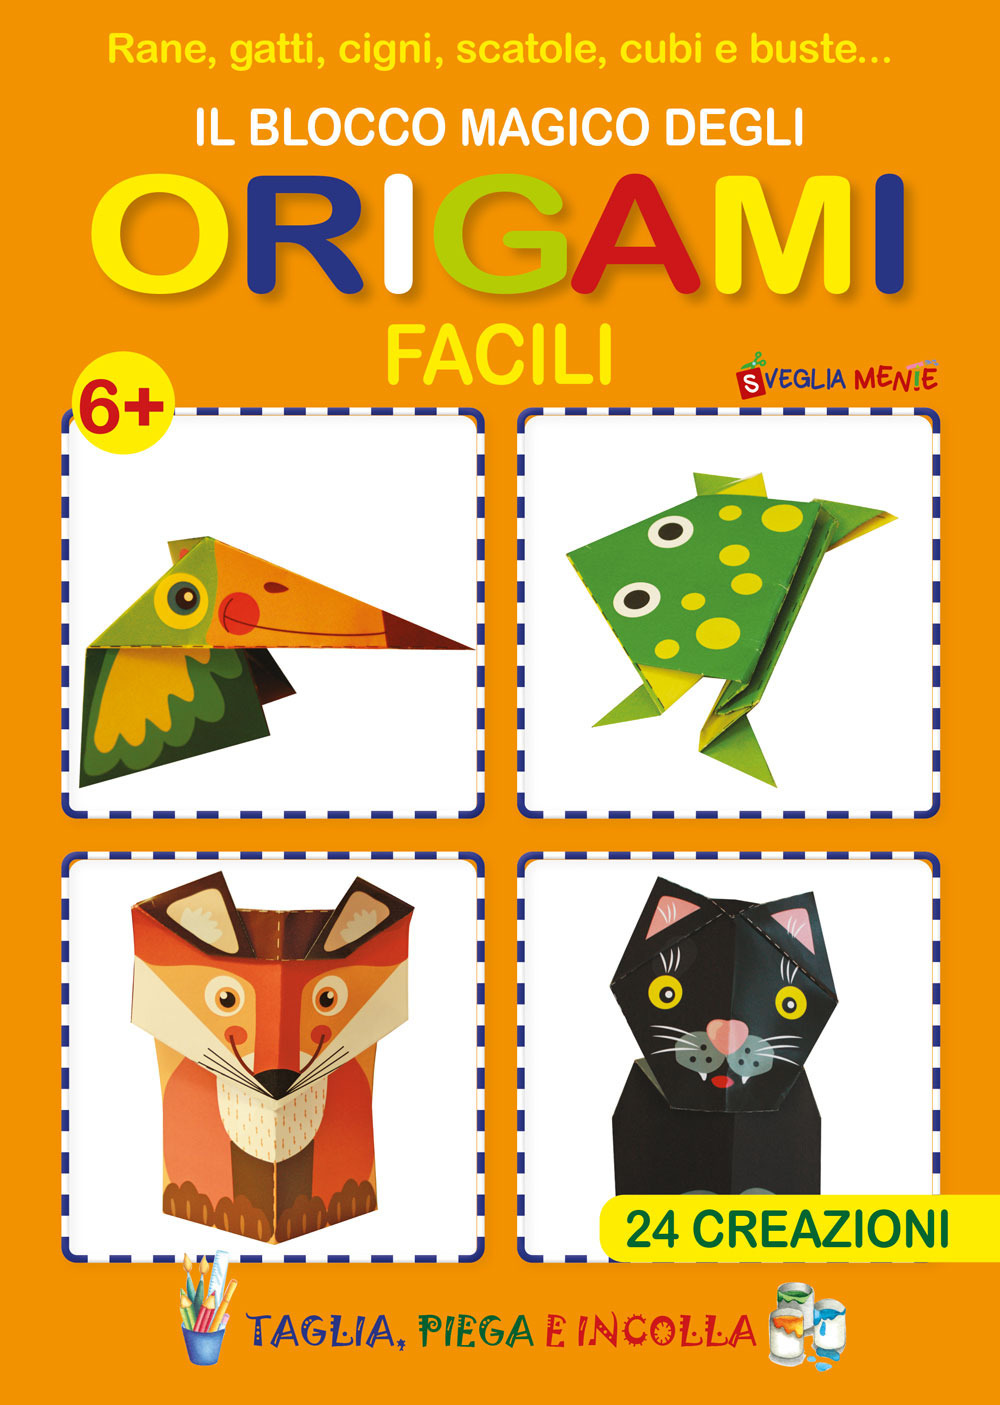 Il blocco magico degli origami facili. Rane, gatti, cigni, scatole, cubi e buste. 24 creazioni